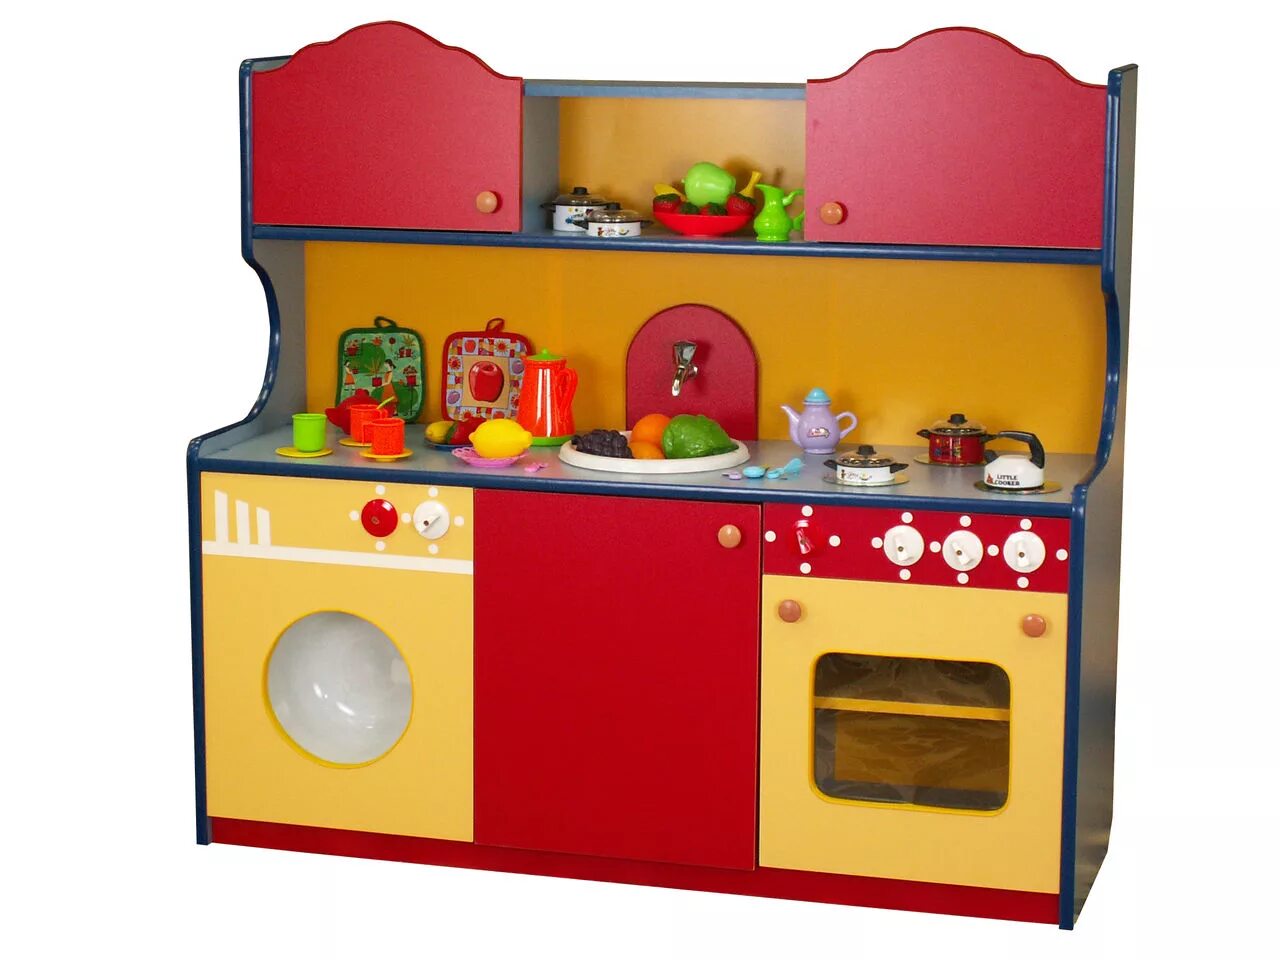 Мебель для детского сада спб. Игровой модуль кухонька для детского сада. Игровая кухня для детского сада. Детская кухня для детского сада.